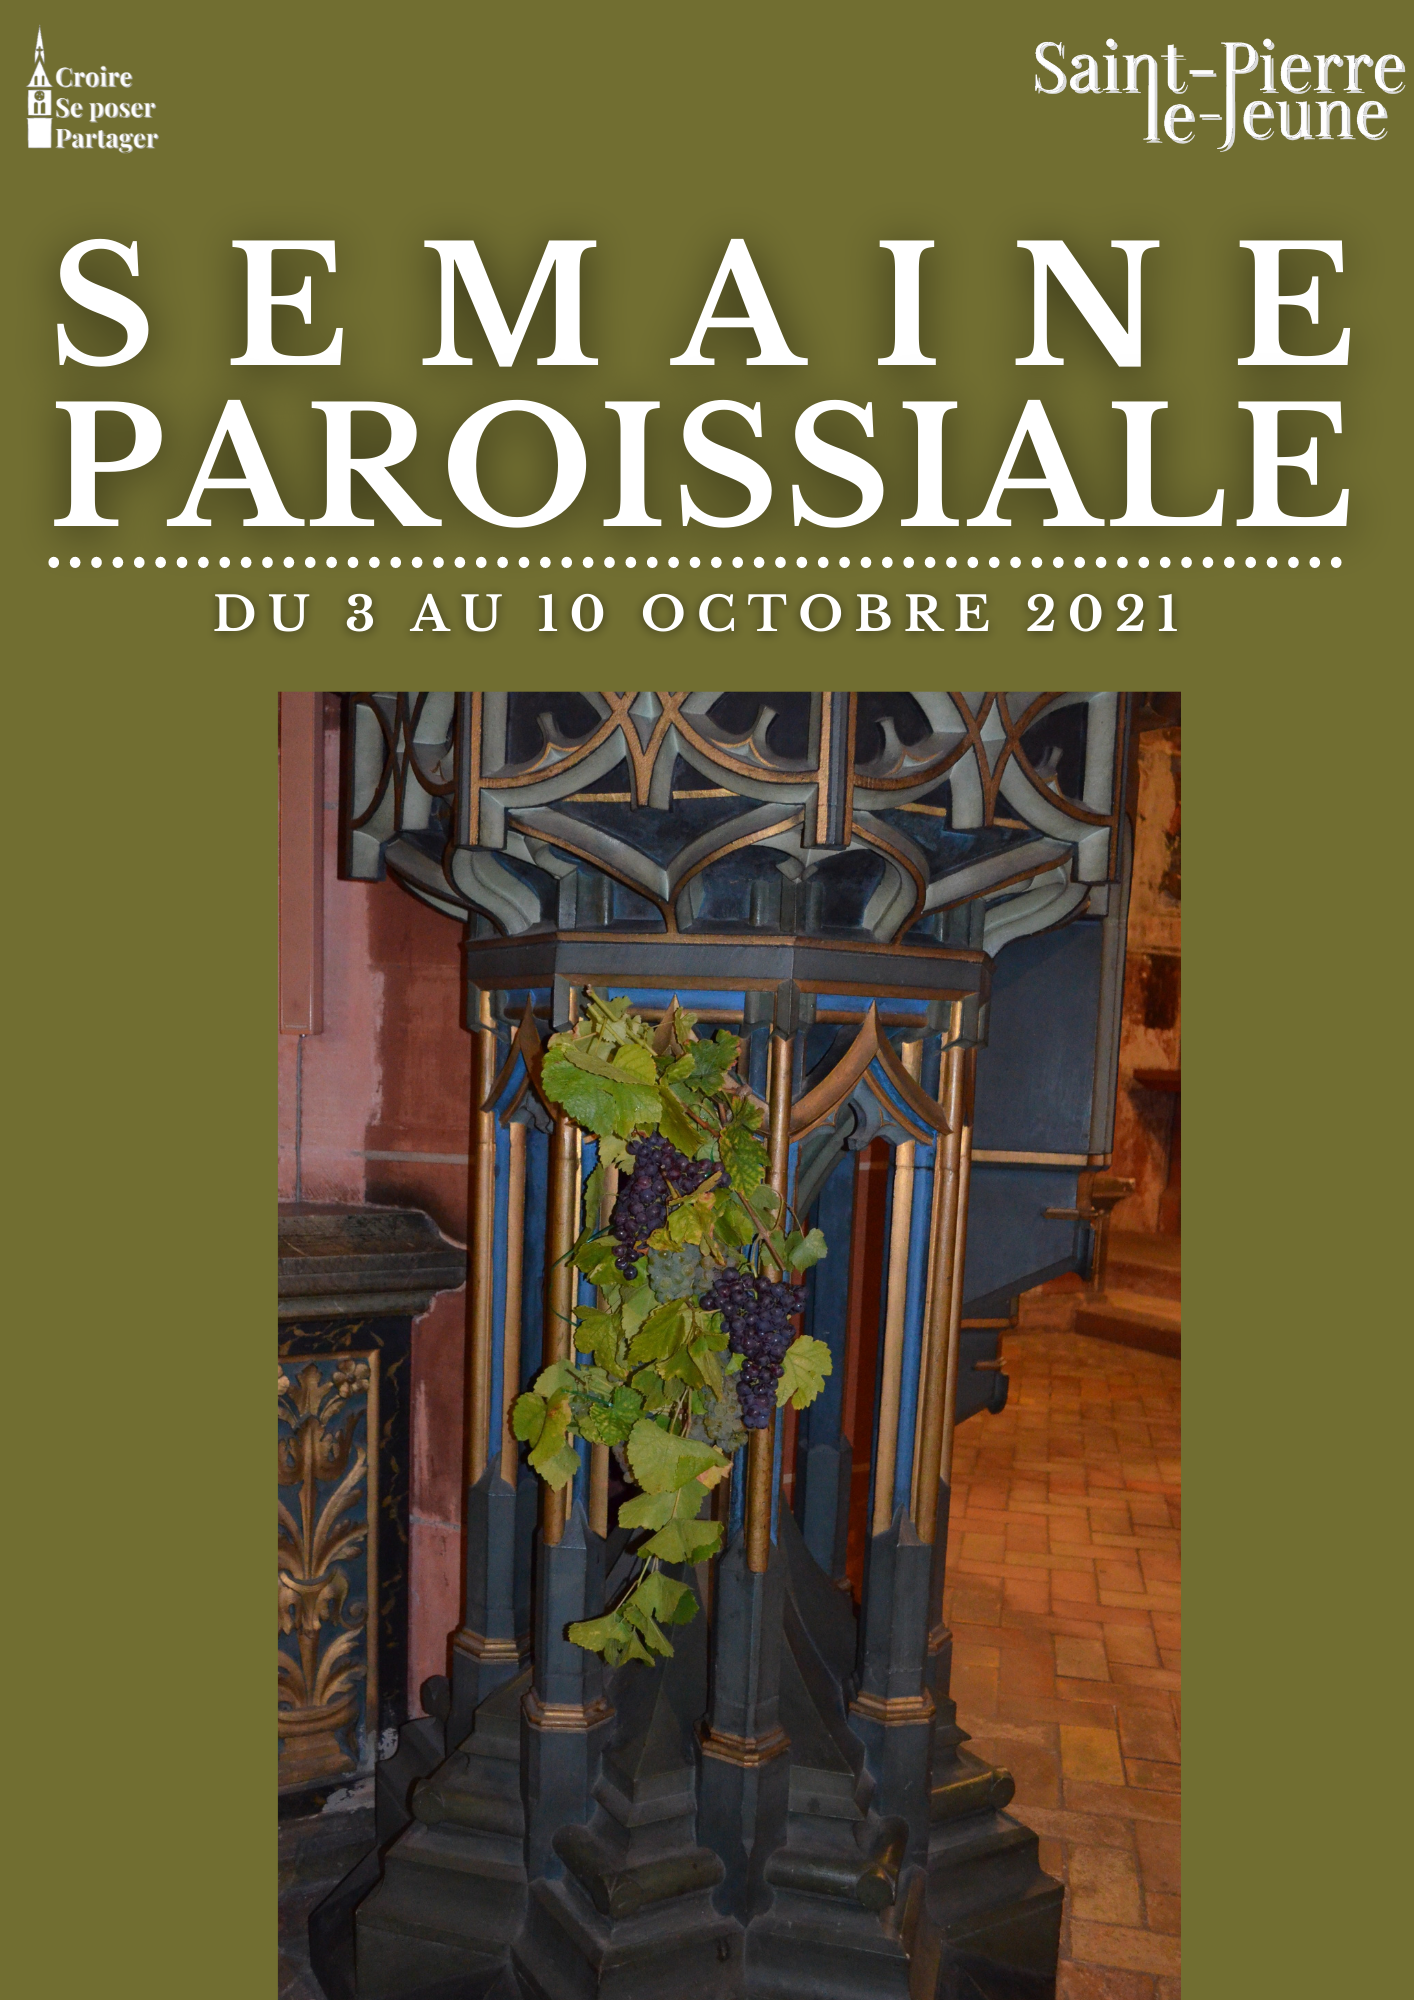 Semaine paroissiale - 3 octobre 2021